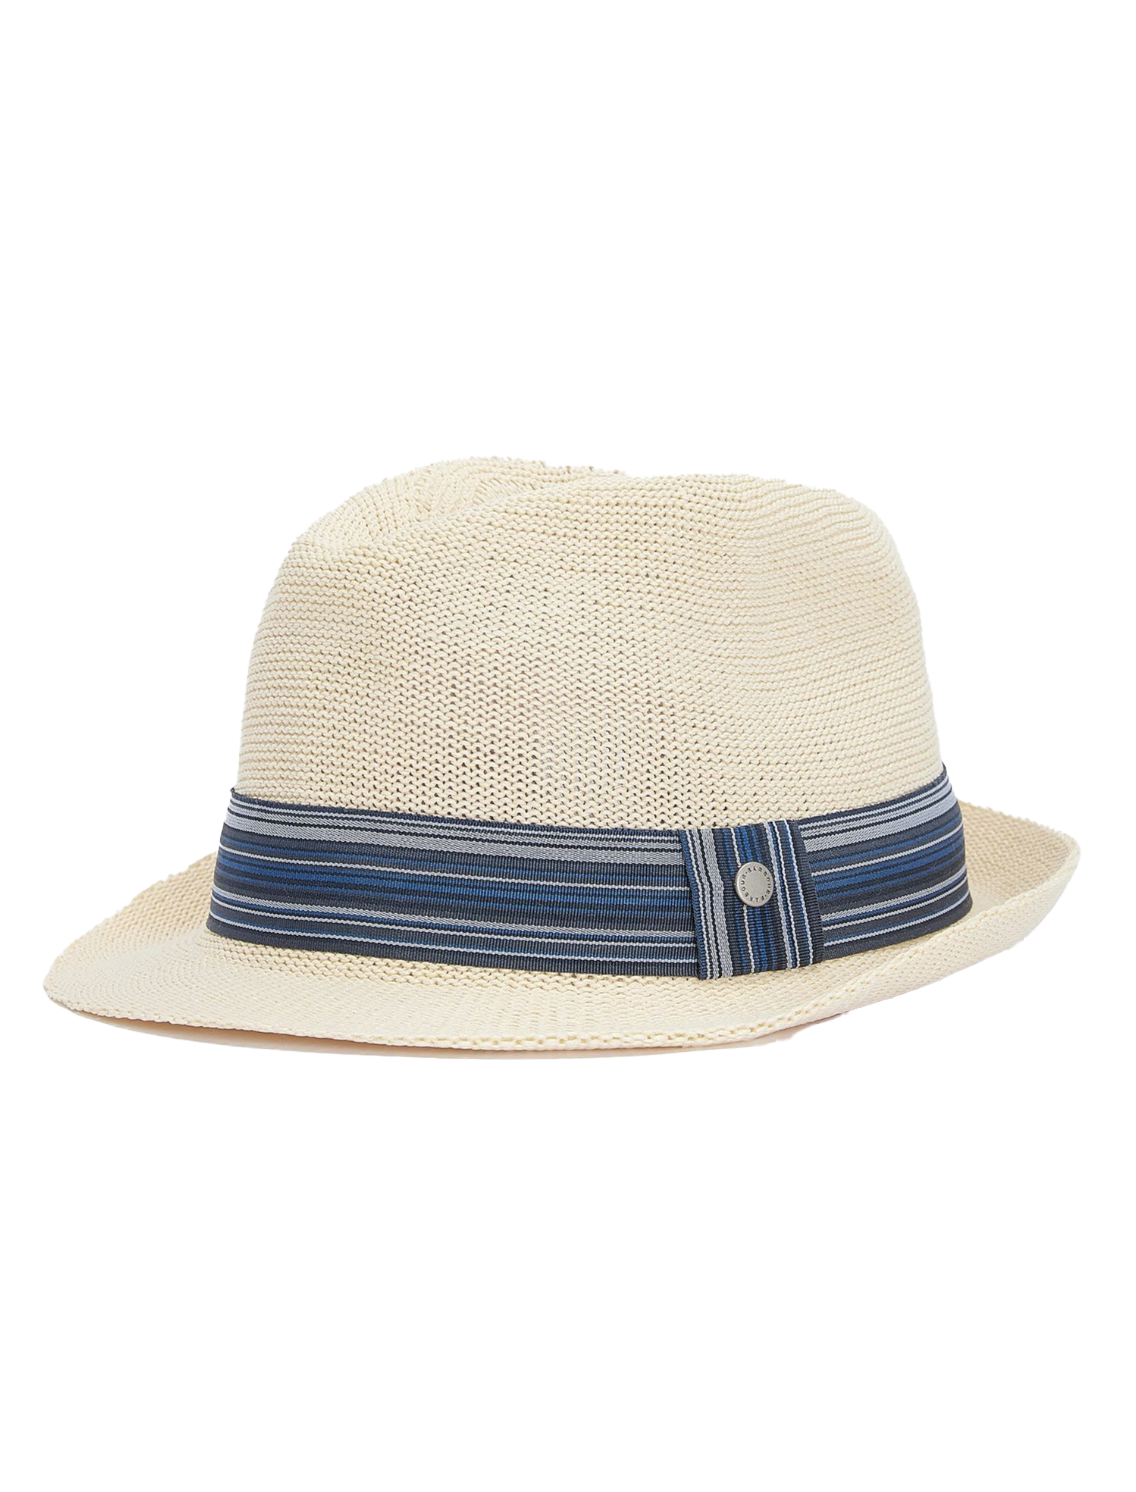 Belford Trilby Summer Hat Ecru/Blue